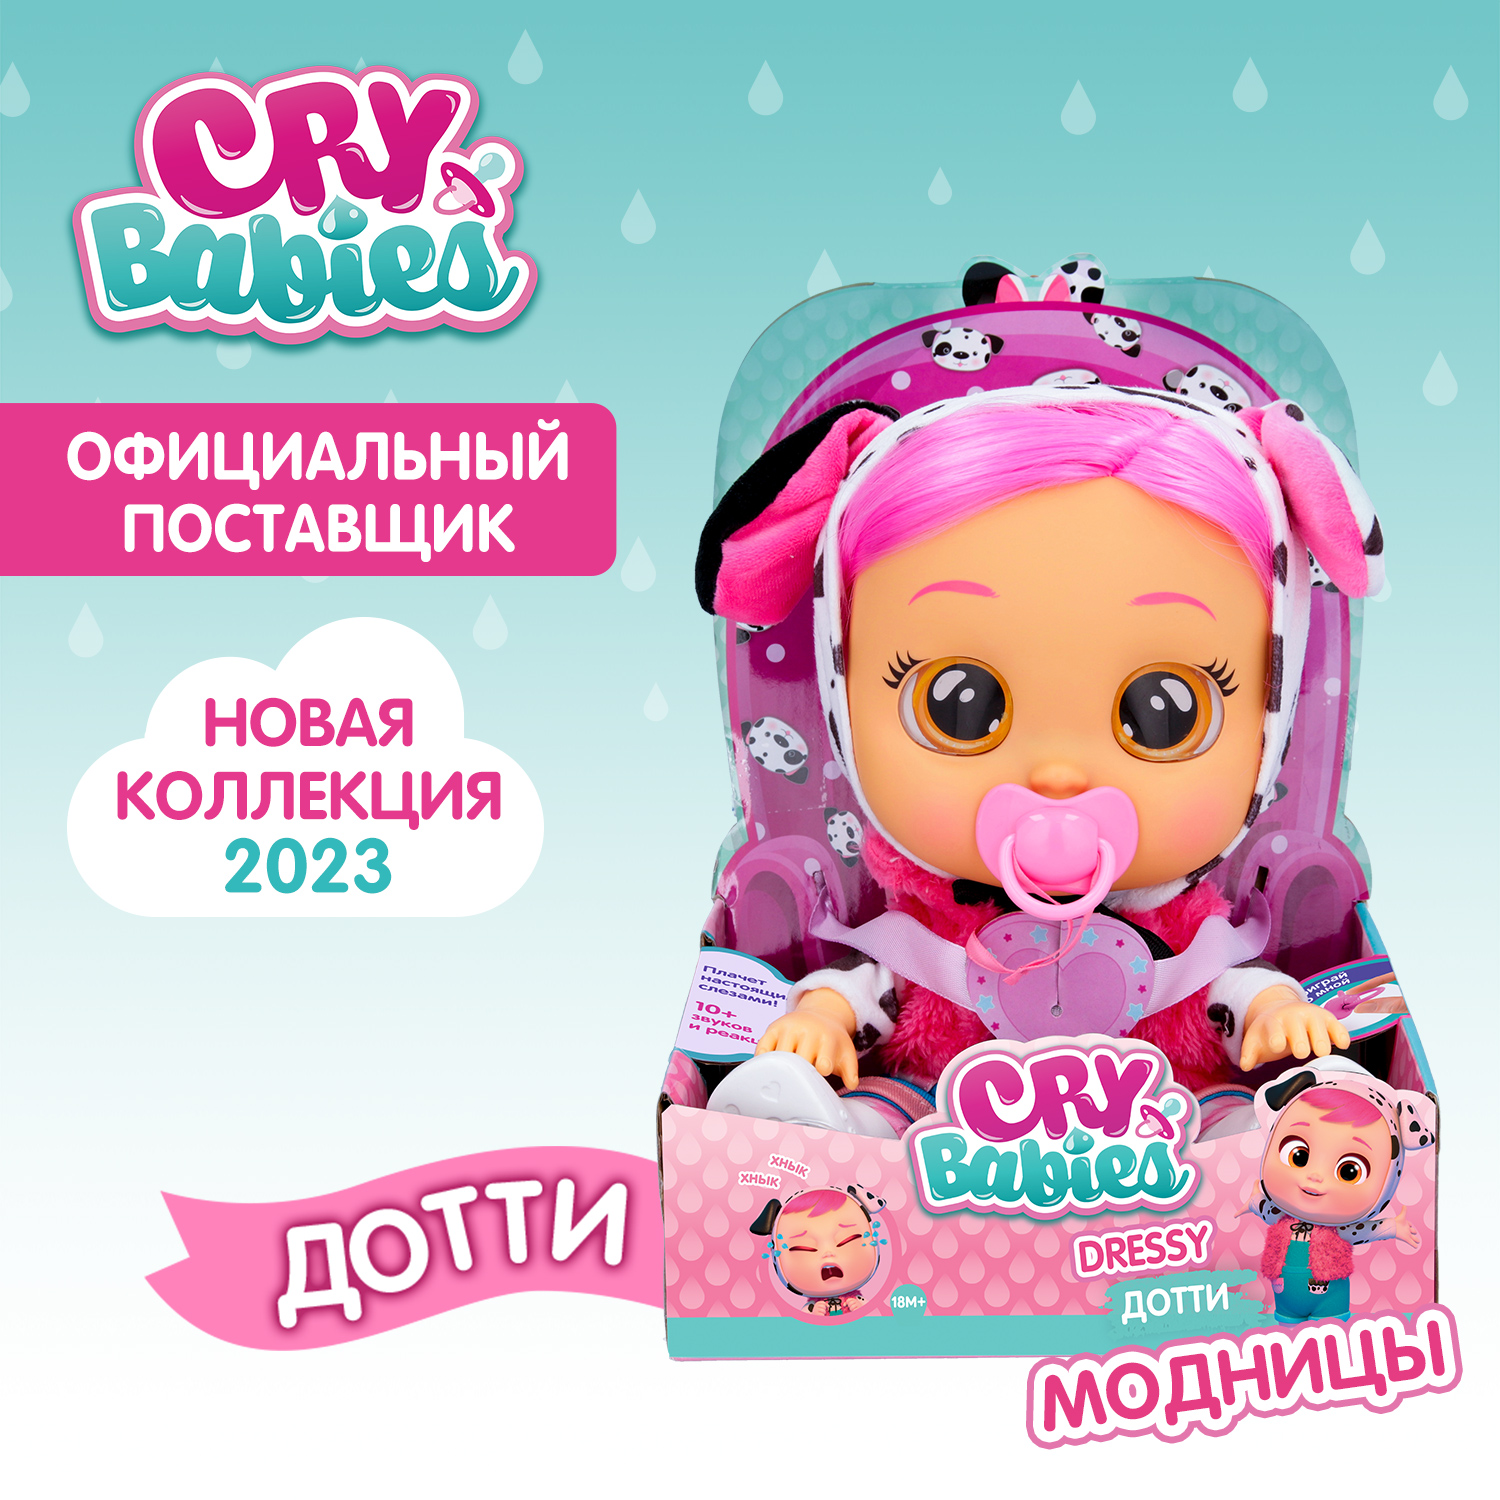 Кукла Cry Babies Дотти Модница, интерактивная, плачущая, 40884 кукла imc toys леди cry babies dressy lady плачущий младенец 40885